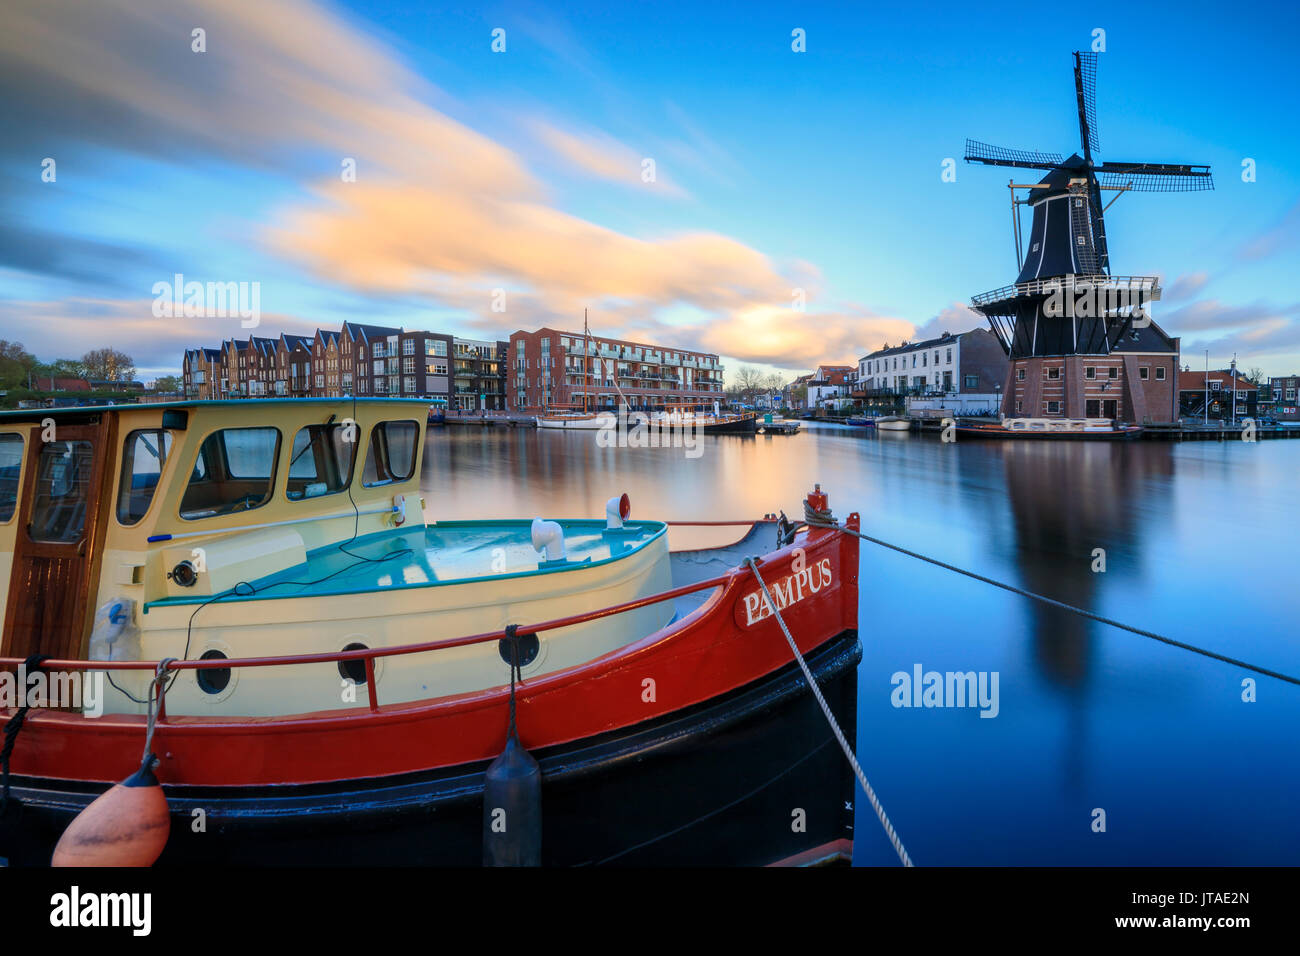 La barca da pesca cornici del mulino a vento De Adriaan riflessa nel fiume Spaarne al crepuscolo, Haarlem, Olanda Settentrionale, Paesi Bassi, Europa Foto Stock